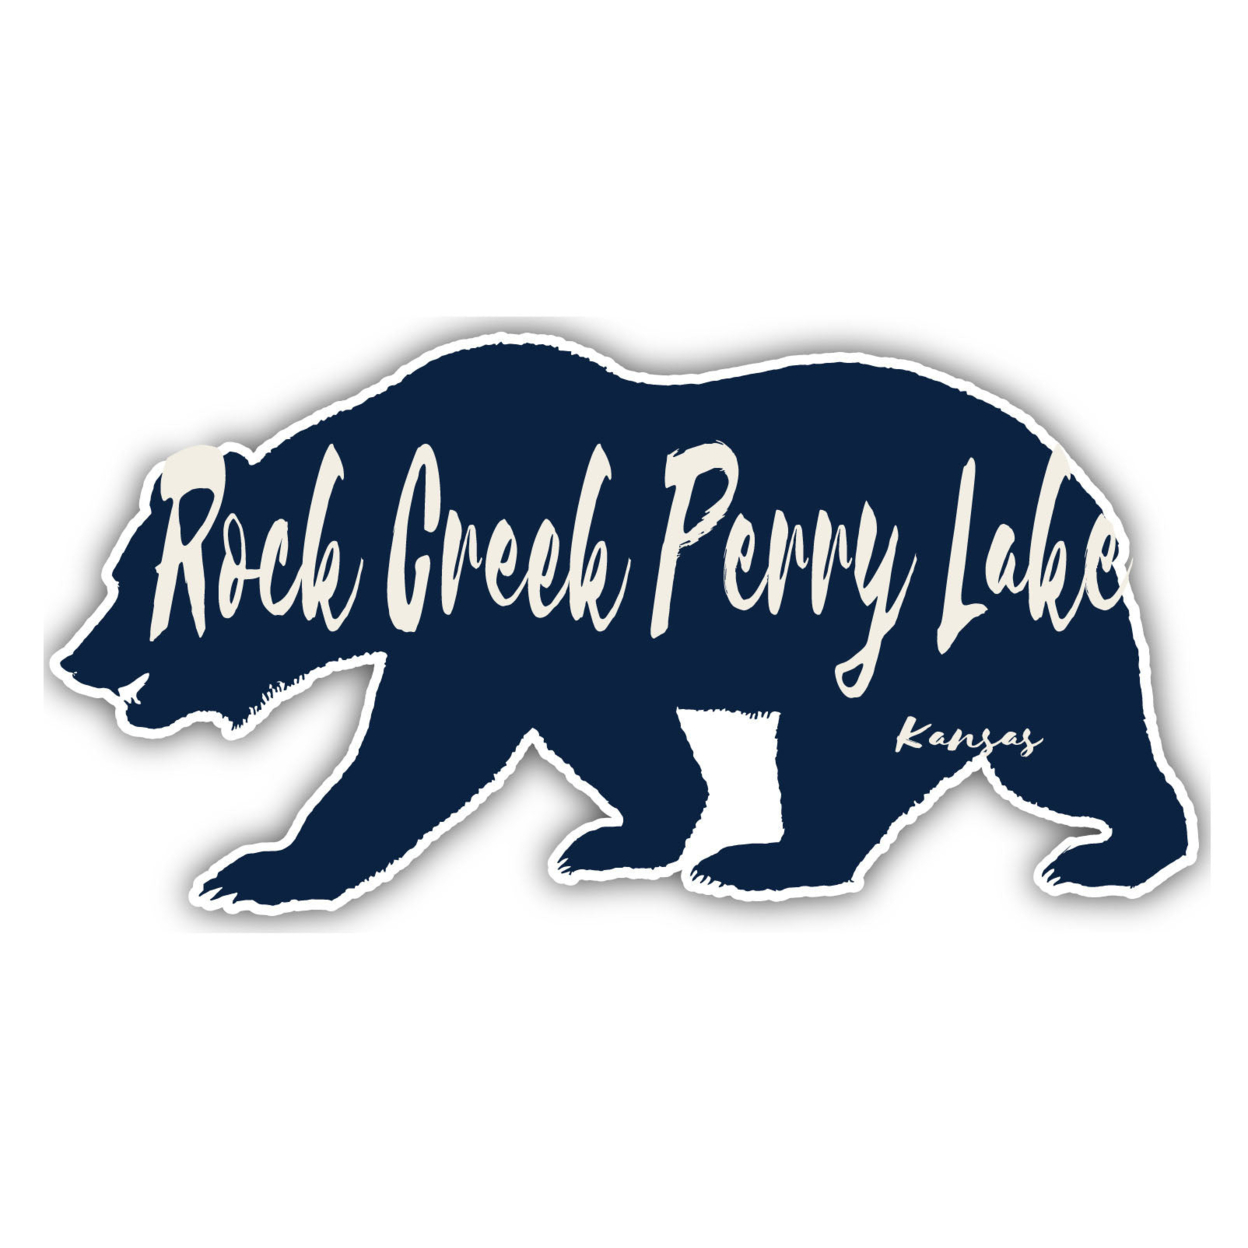 Rock Creek Perry Lake Kansas Souvenir Decorative Stickers (Choose Theme And Size) - Single Unit, 4-Inch, Bear